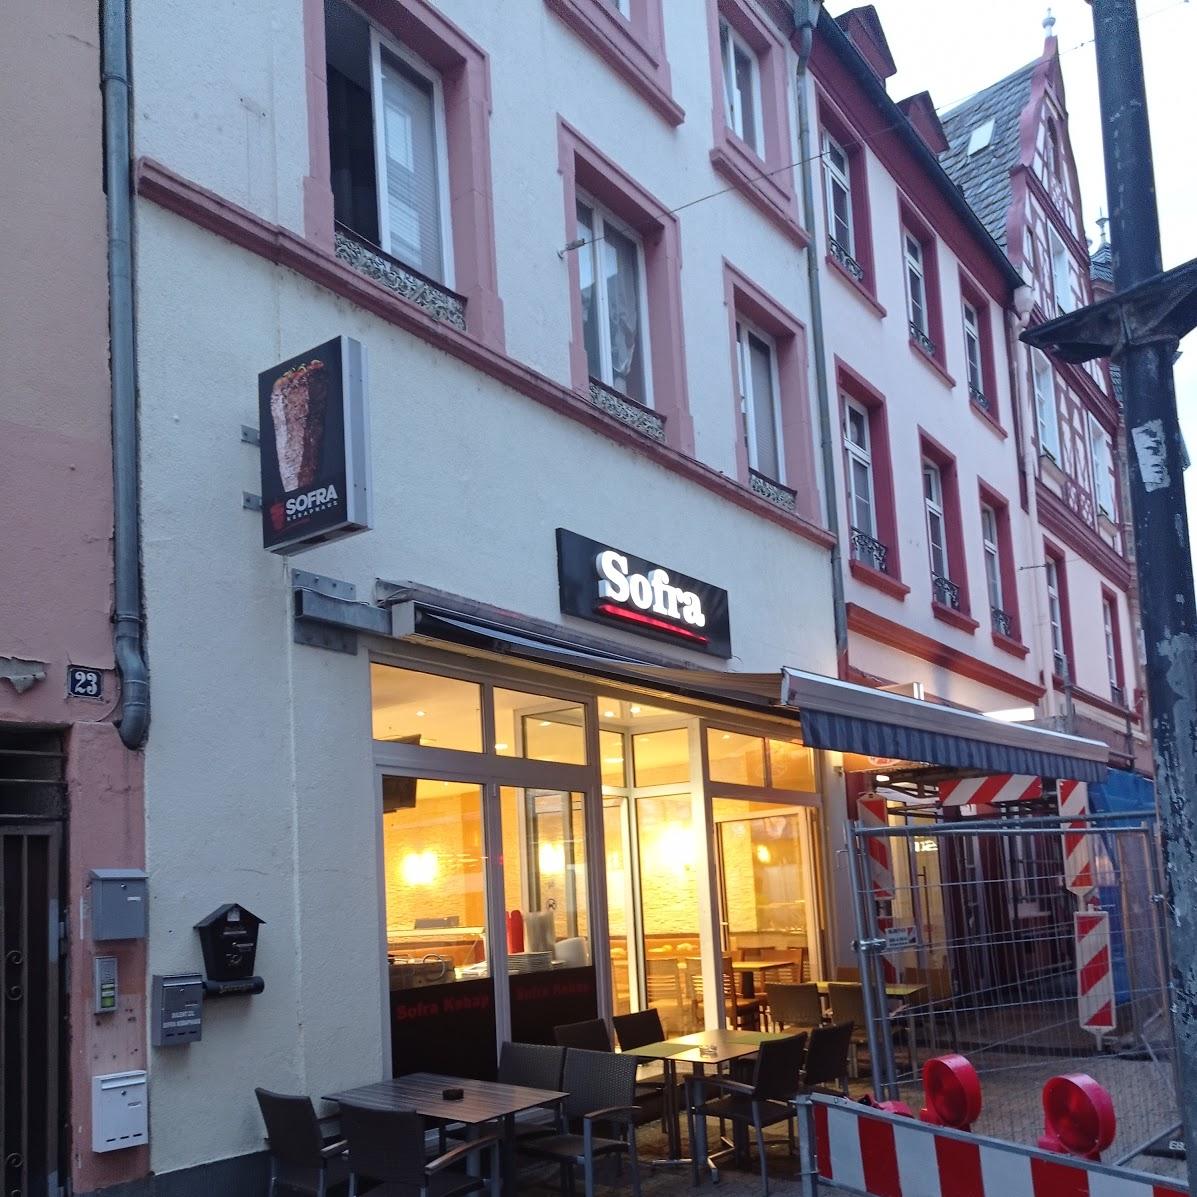 Restaurant "Sofra Kebap" in Koblenz